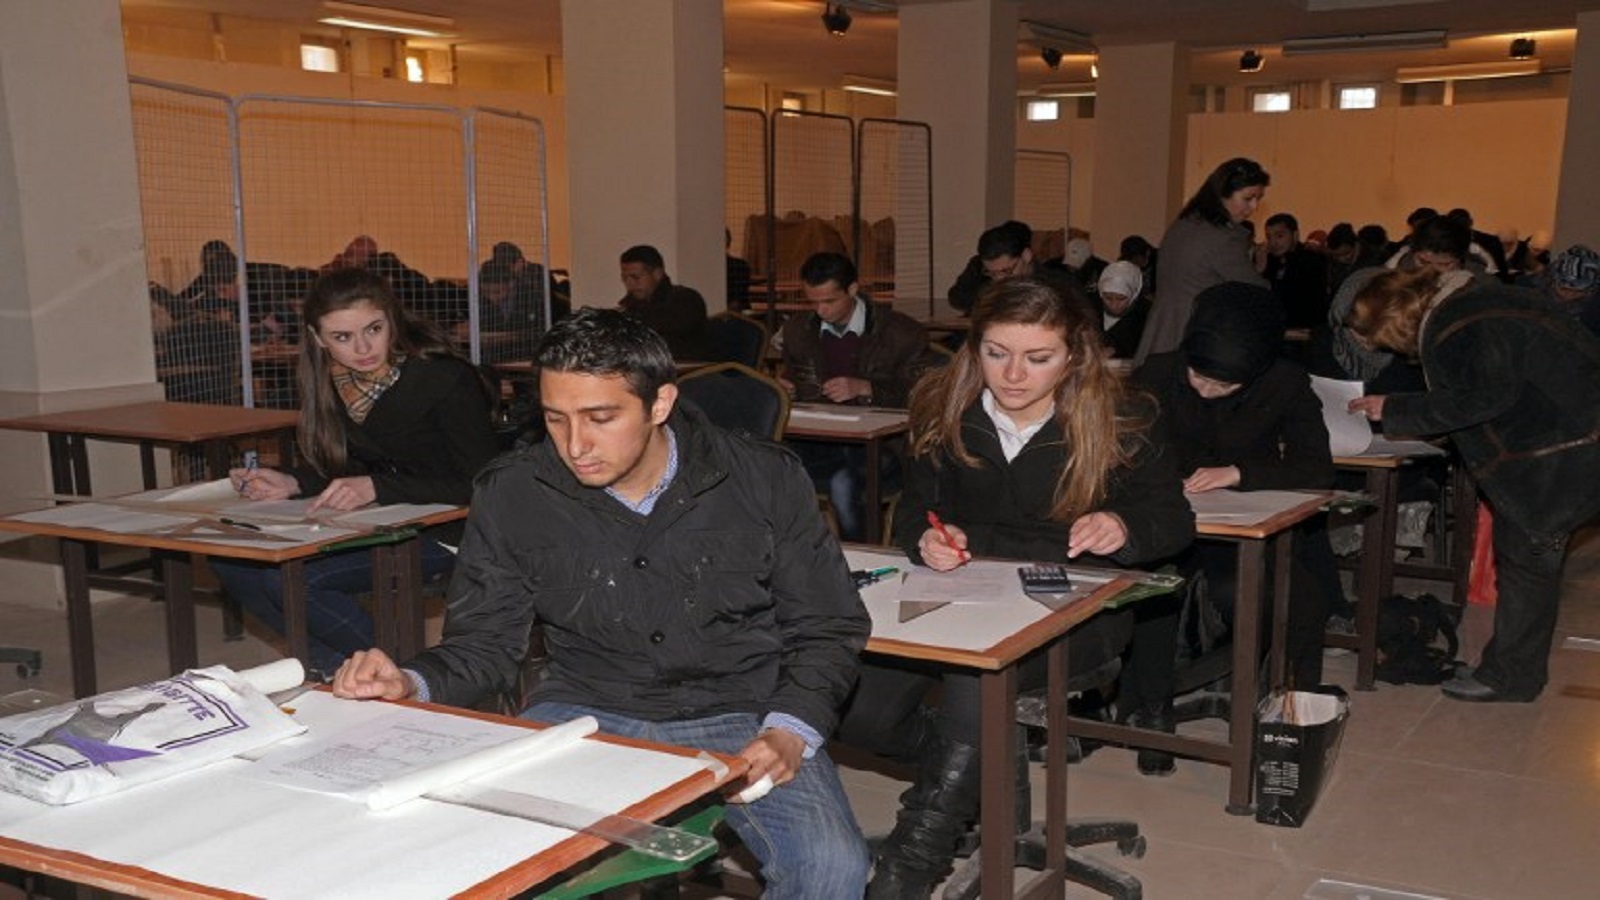 سوريا: الترخيص لـ10 جامعات خاصة.. والطلاب بين النزوح والهجرة